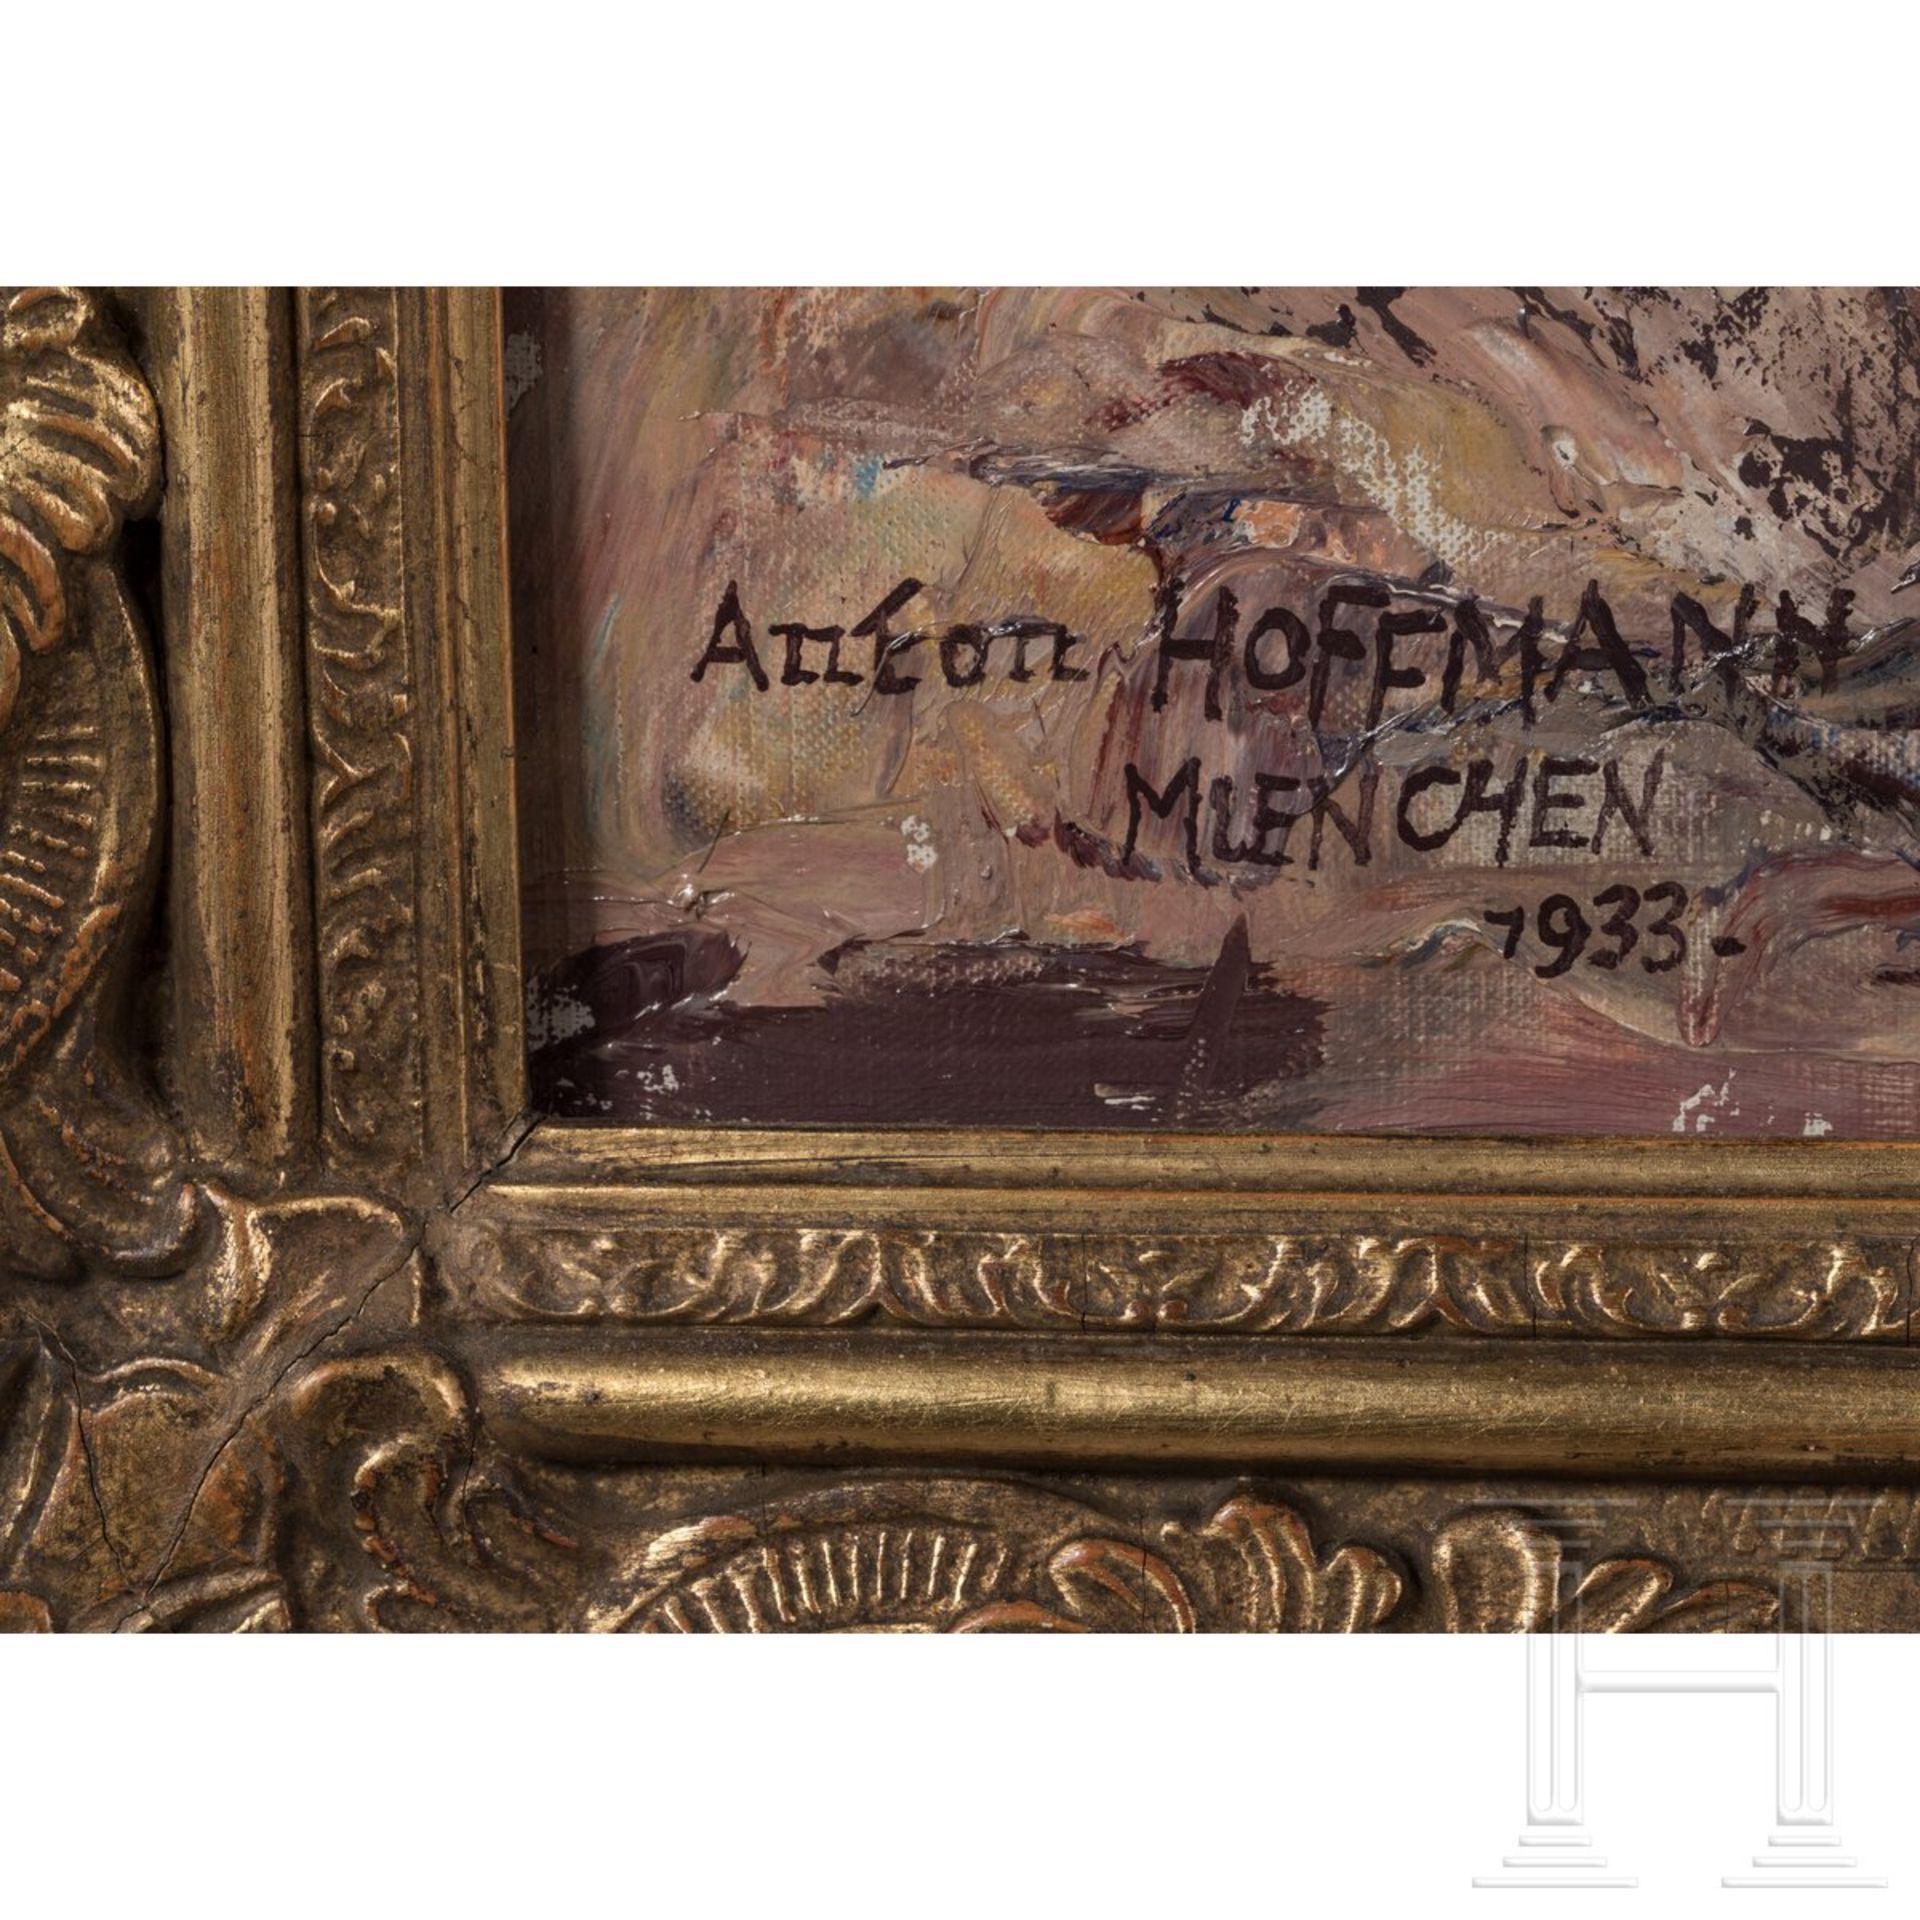 Anton Hoffmann, Reitende Artillerie, München, datiert 1933 - Bild 4 aus 5